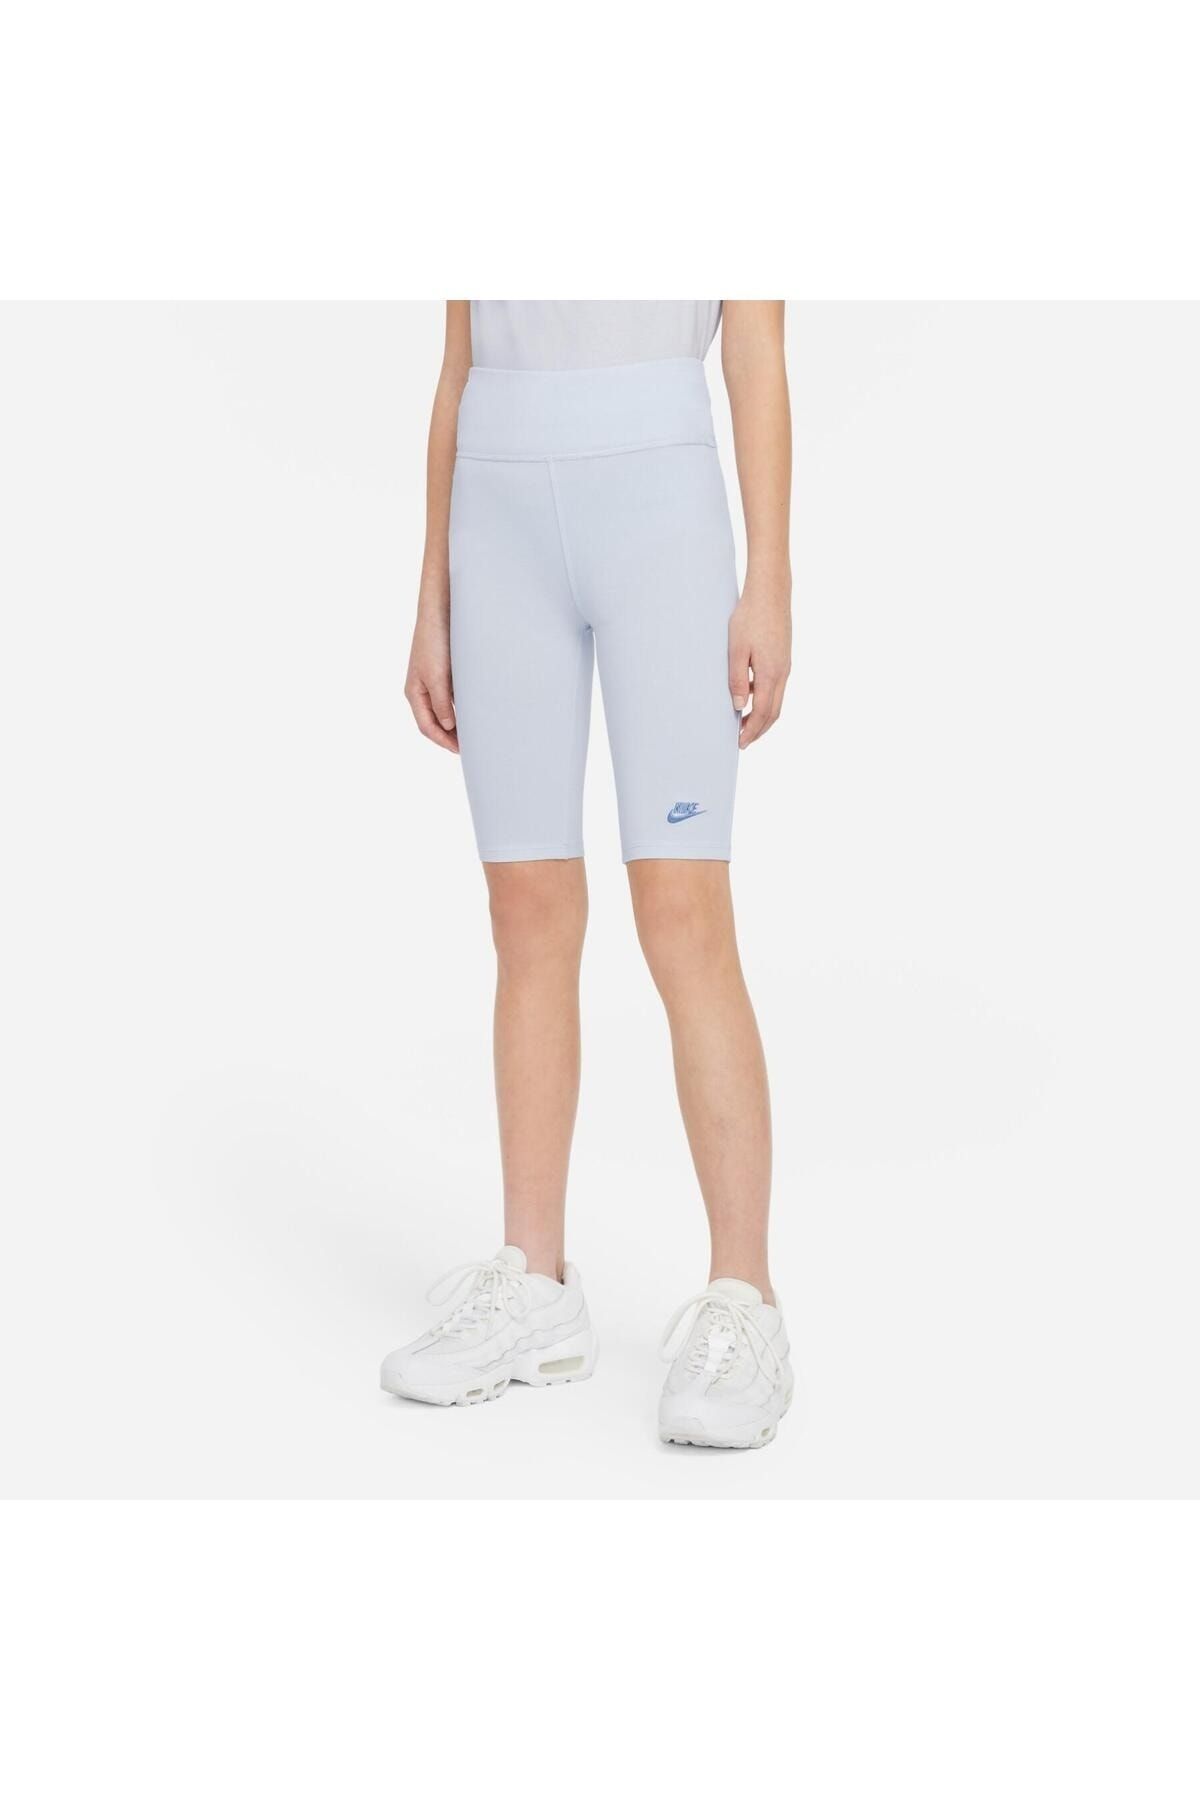 Nike Sportswear Older Kids' (Girls') Shorts DA1243-085